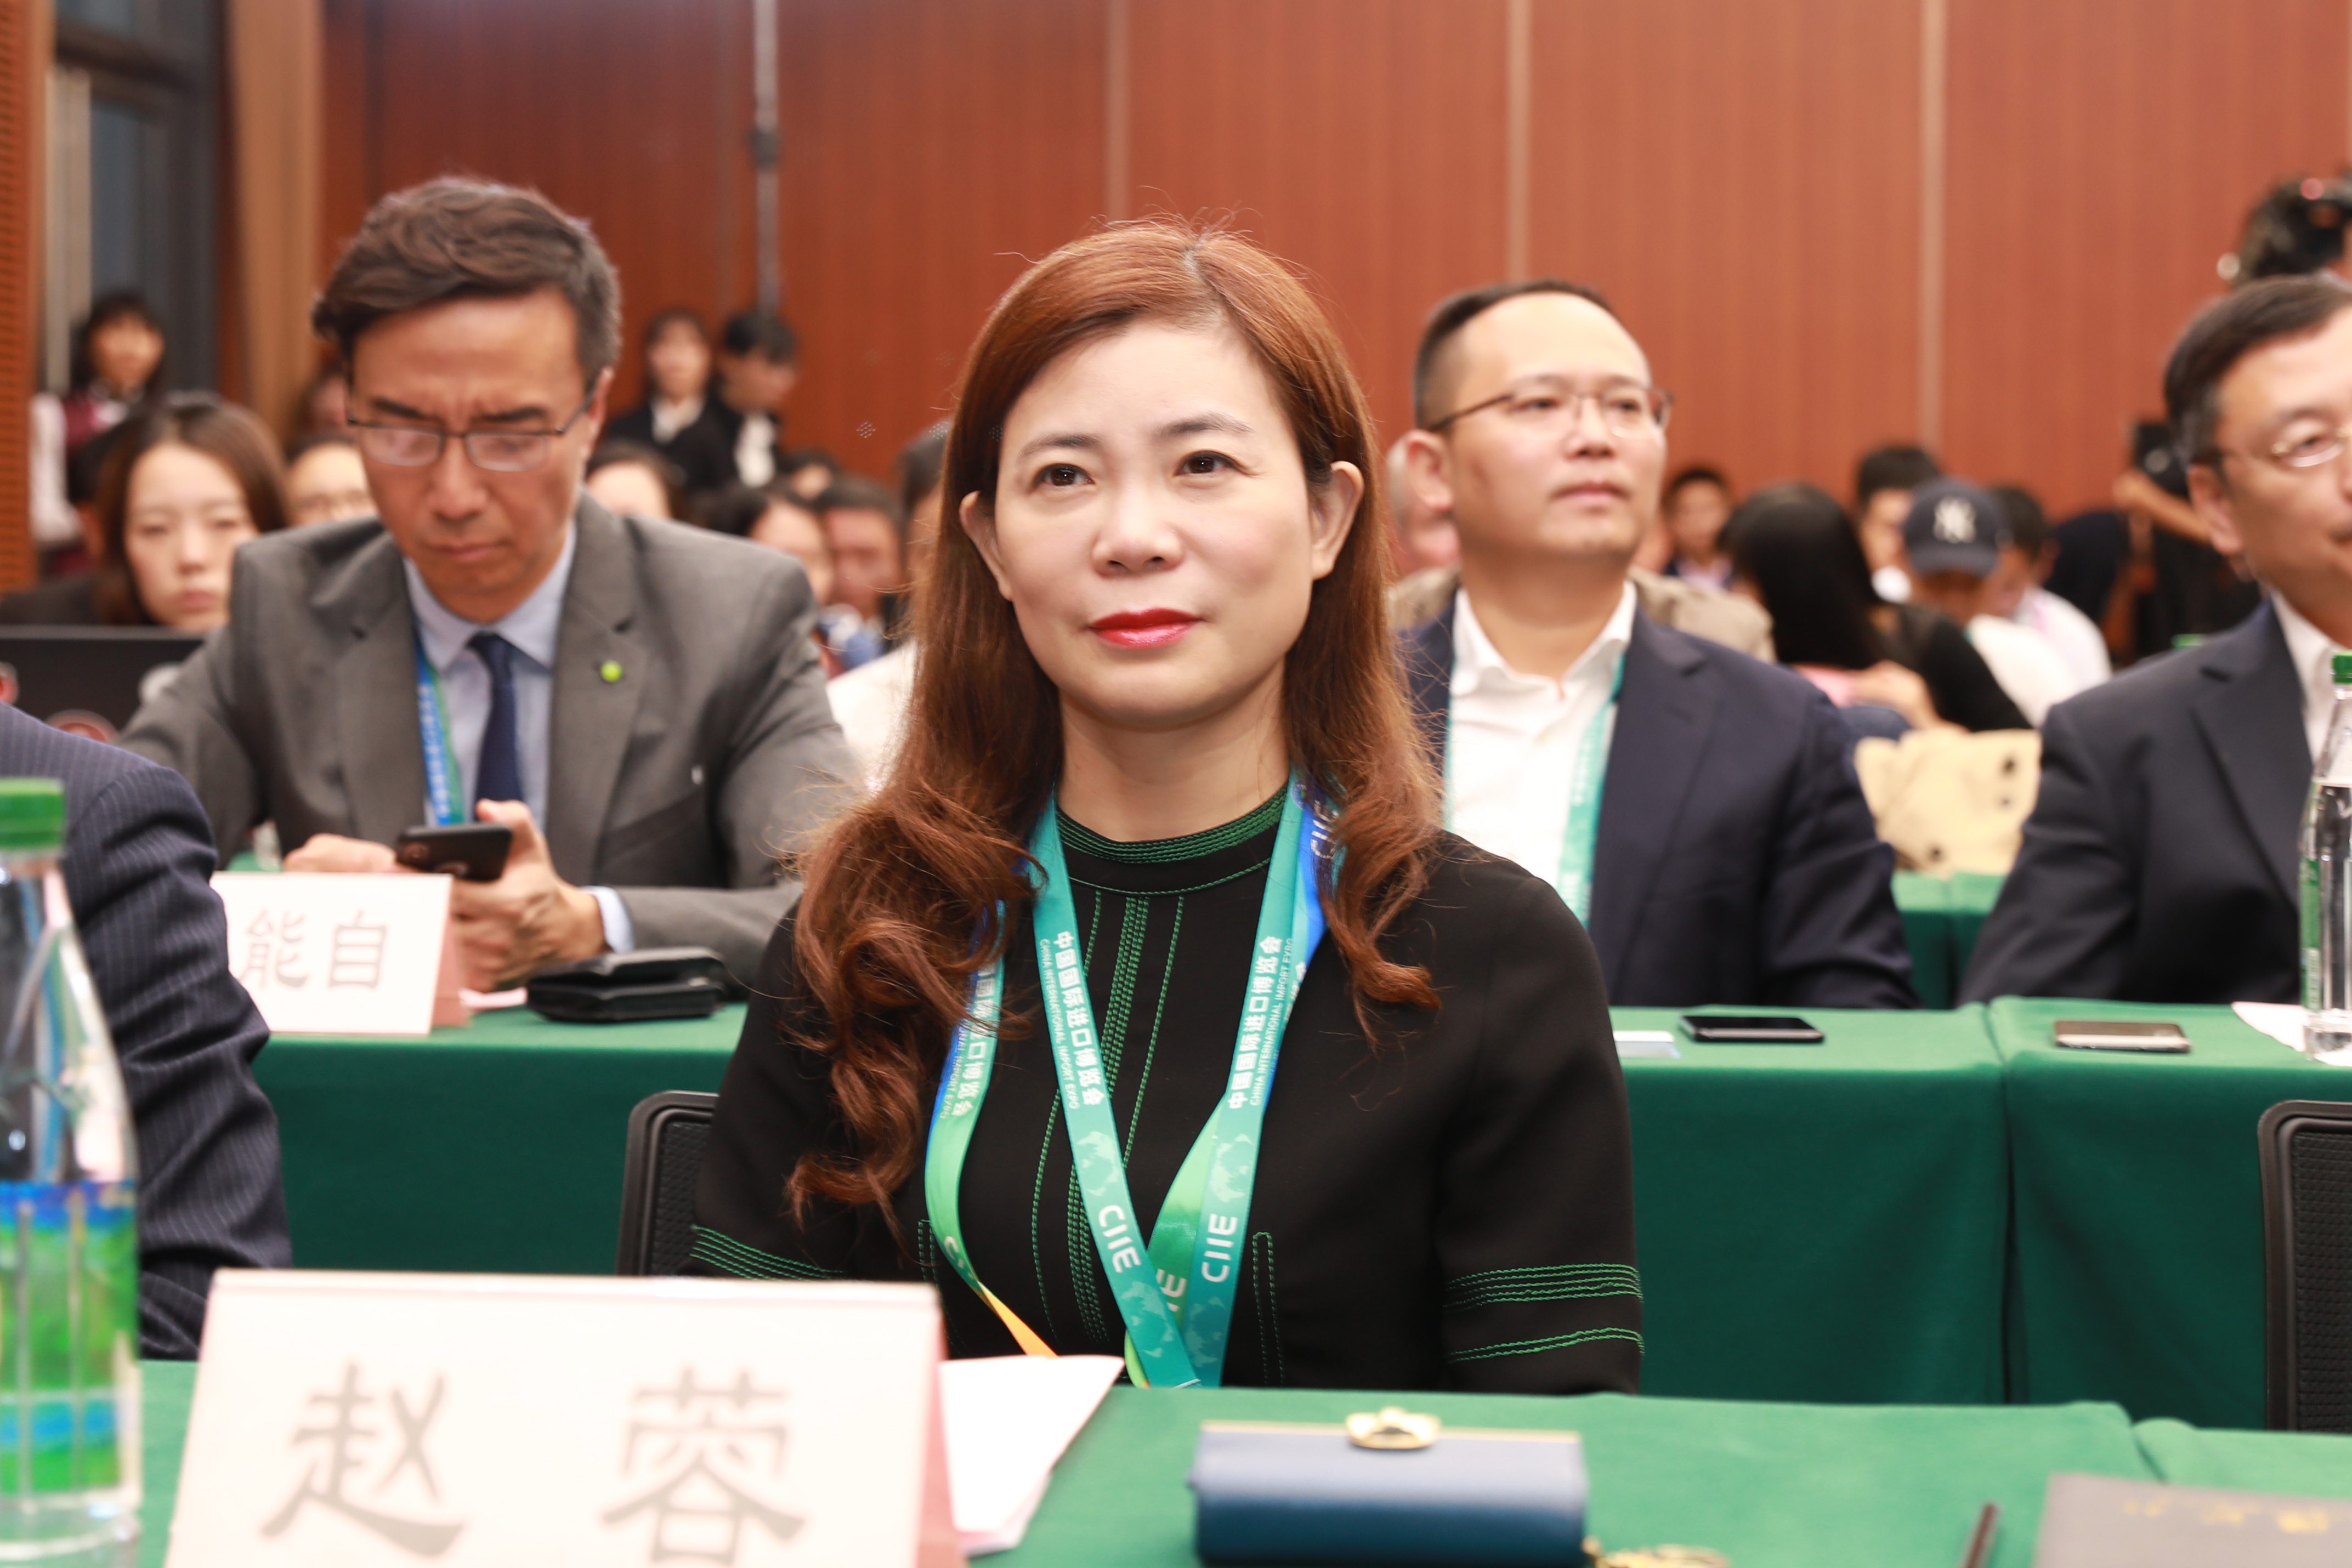 中国银行上海市分行行长赵蓉出席首届中国国际进口博览会主题活动